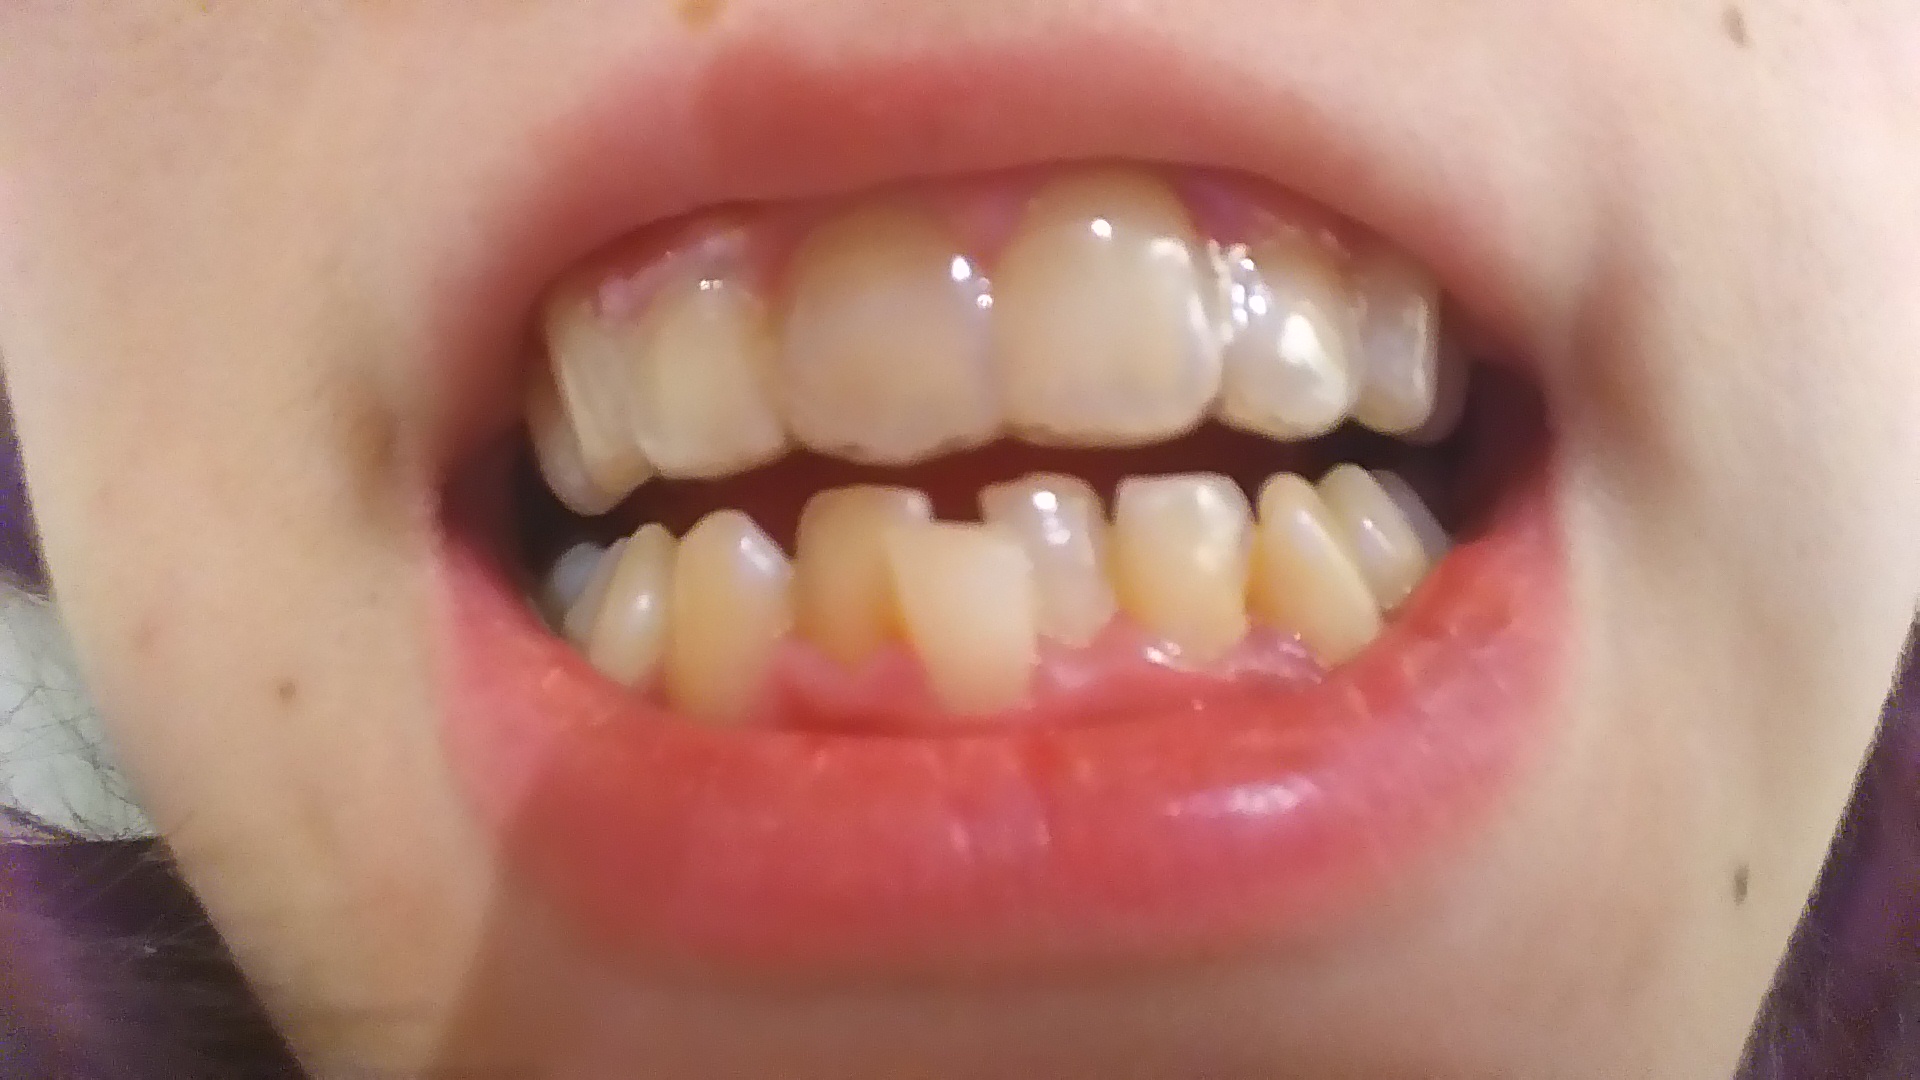 [写真あり] 上前歯の保定中に下前歯を矯正したい 歯チャンネル歯科相談室